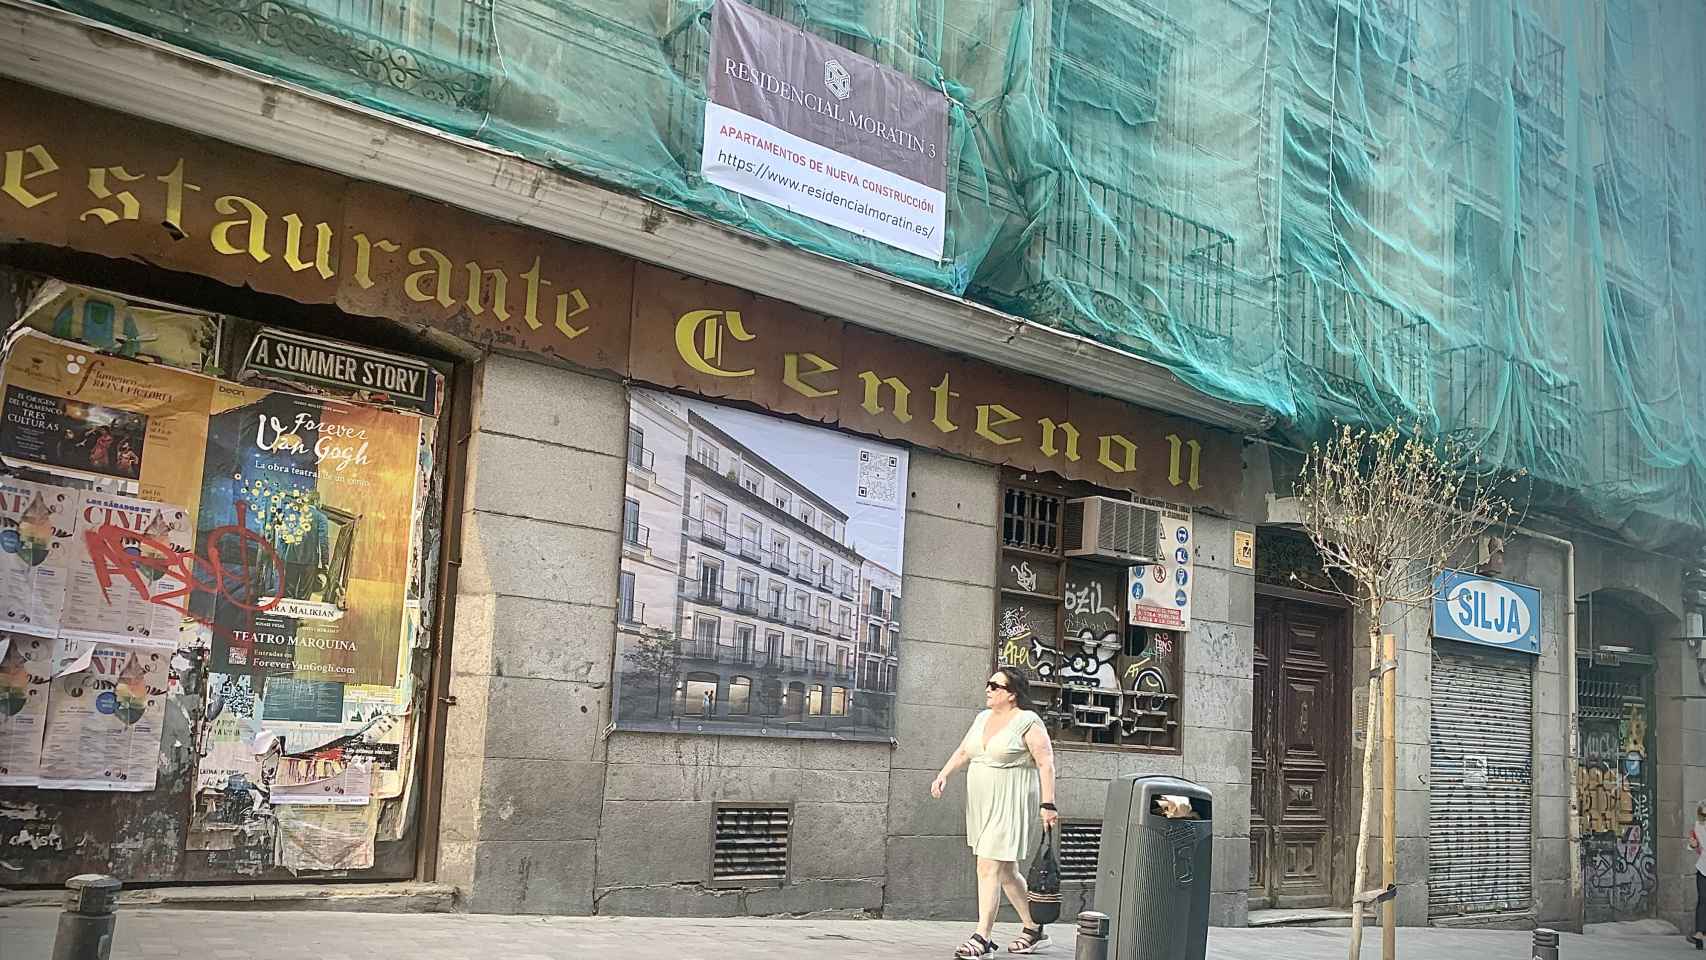 La puerta del edificio de Moratín 3, donde se ve el cartel de la nueva promoción.